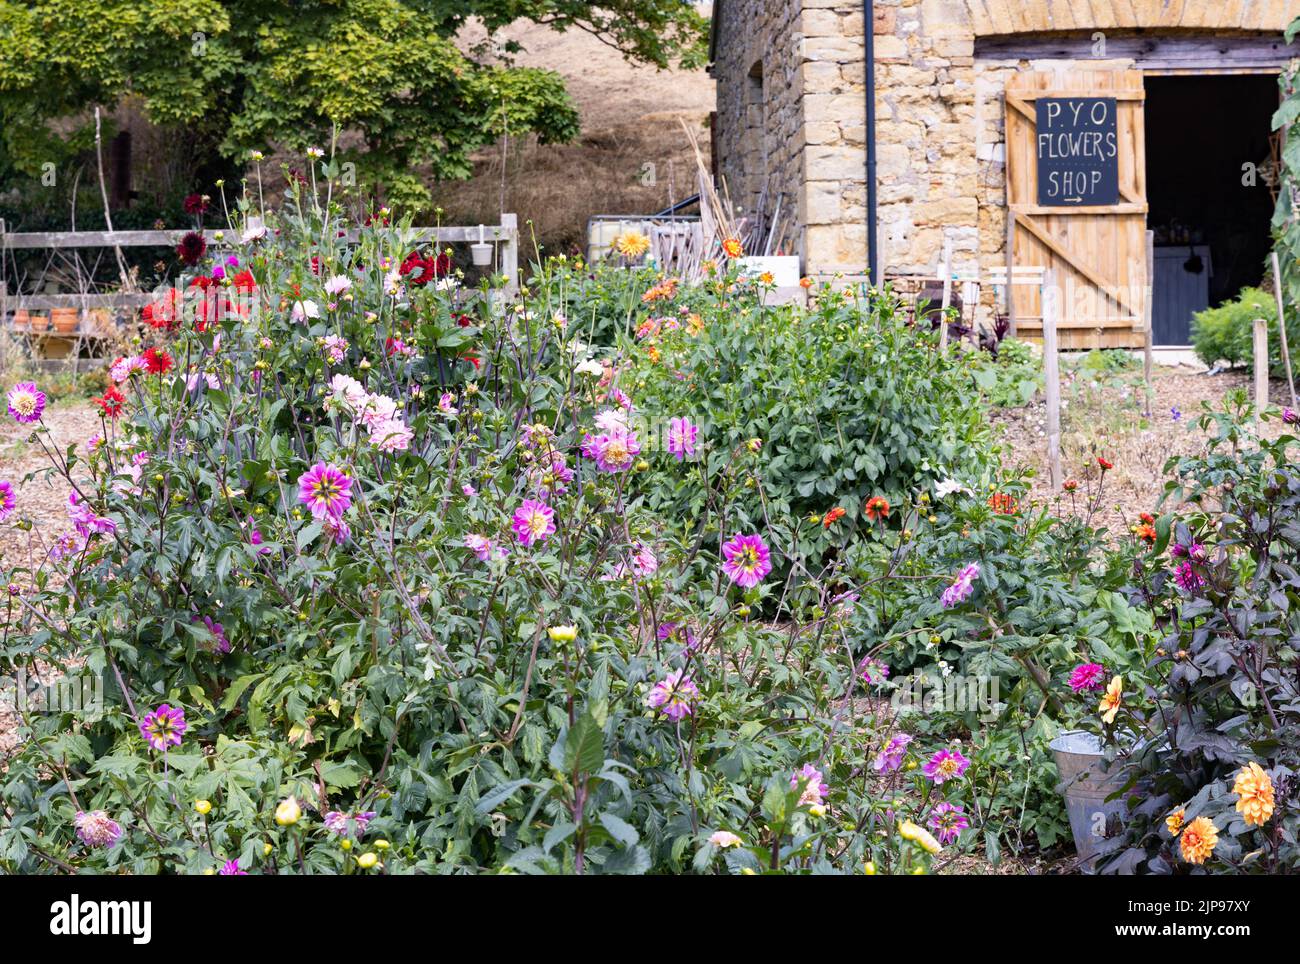 Pick Your Own, UK - ein Pick Your Own Flowers Shop mit bunten Dahlien und anderen blühenden Pflanzen, Abbotsbury, Dorset UK Stockfoto